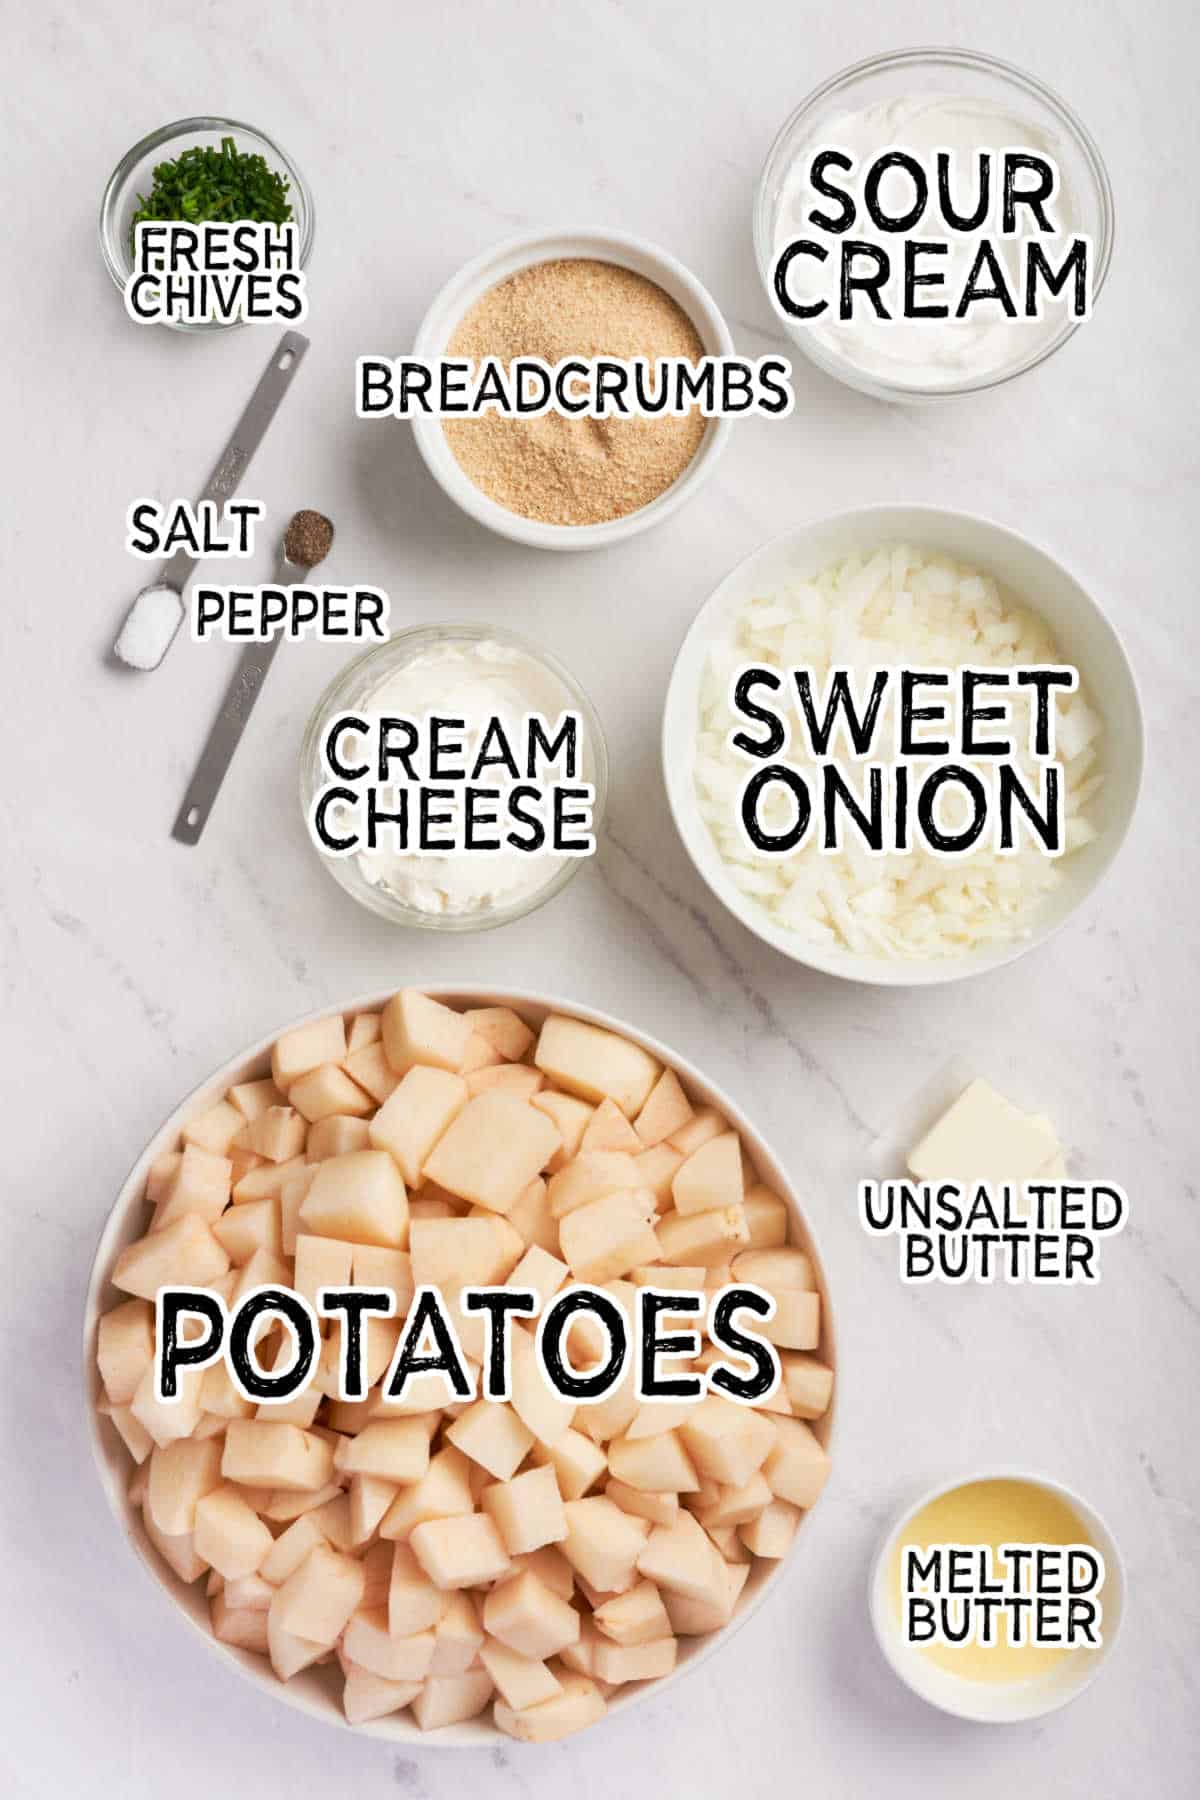 Ingredients to make Swedish Potatoes.